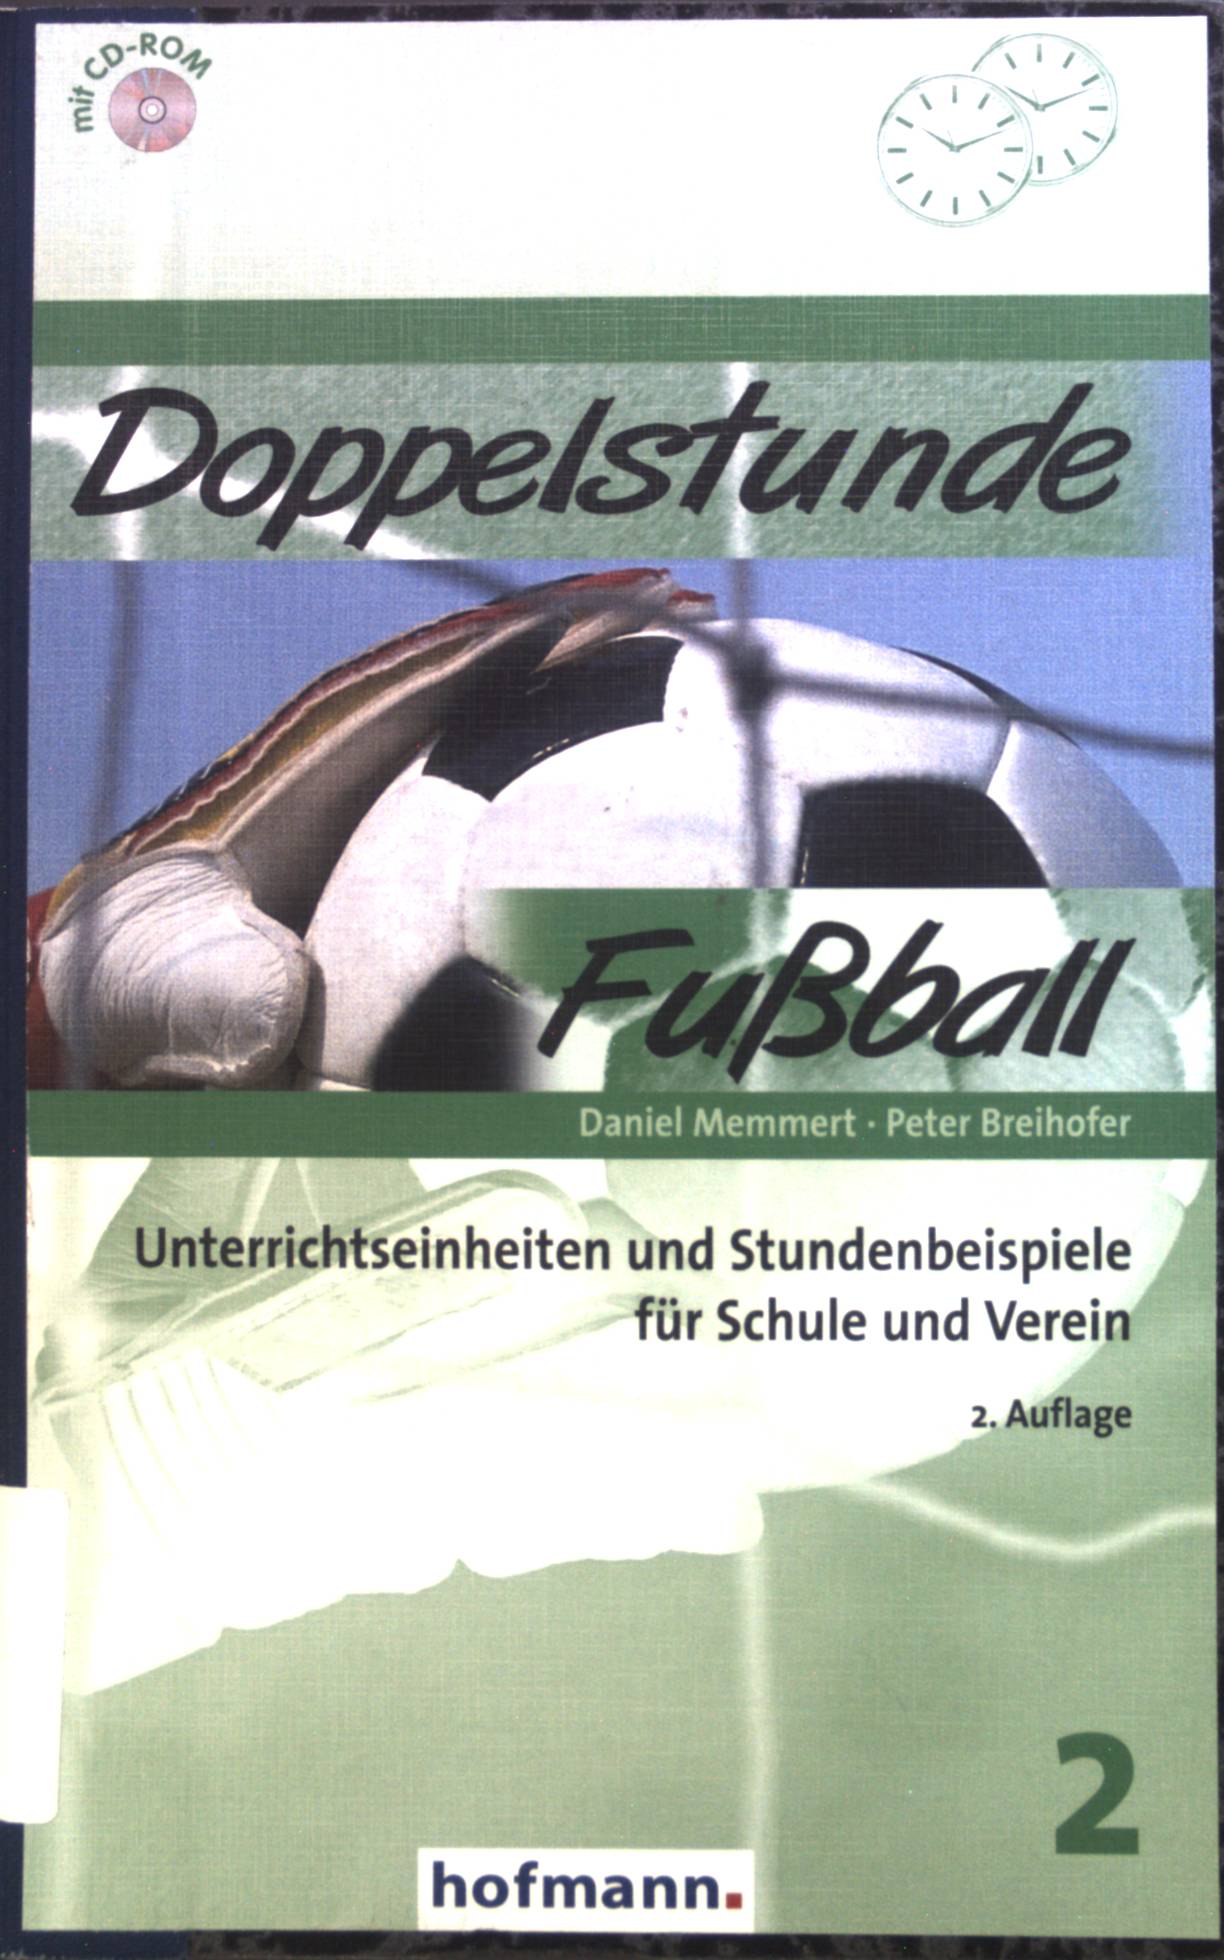 Doppelstunde Fußball : Unterrichtseinheiten und Stundenbeispiele für Schule und Verein. - Memmert, Daniel und Peter Breihofer